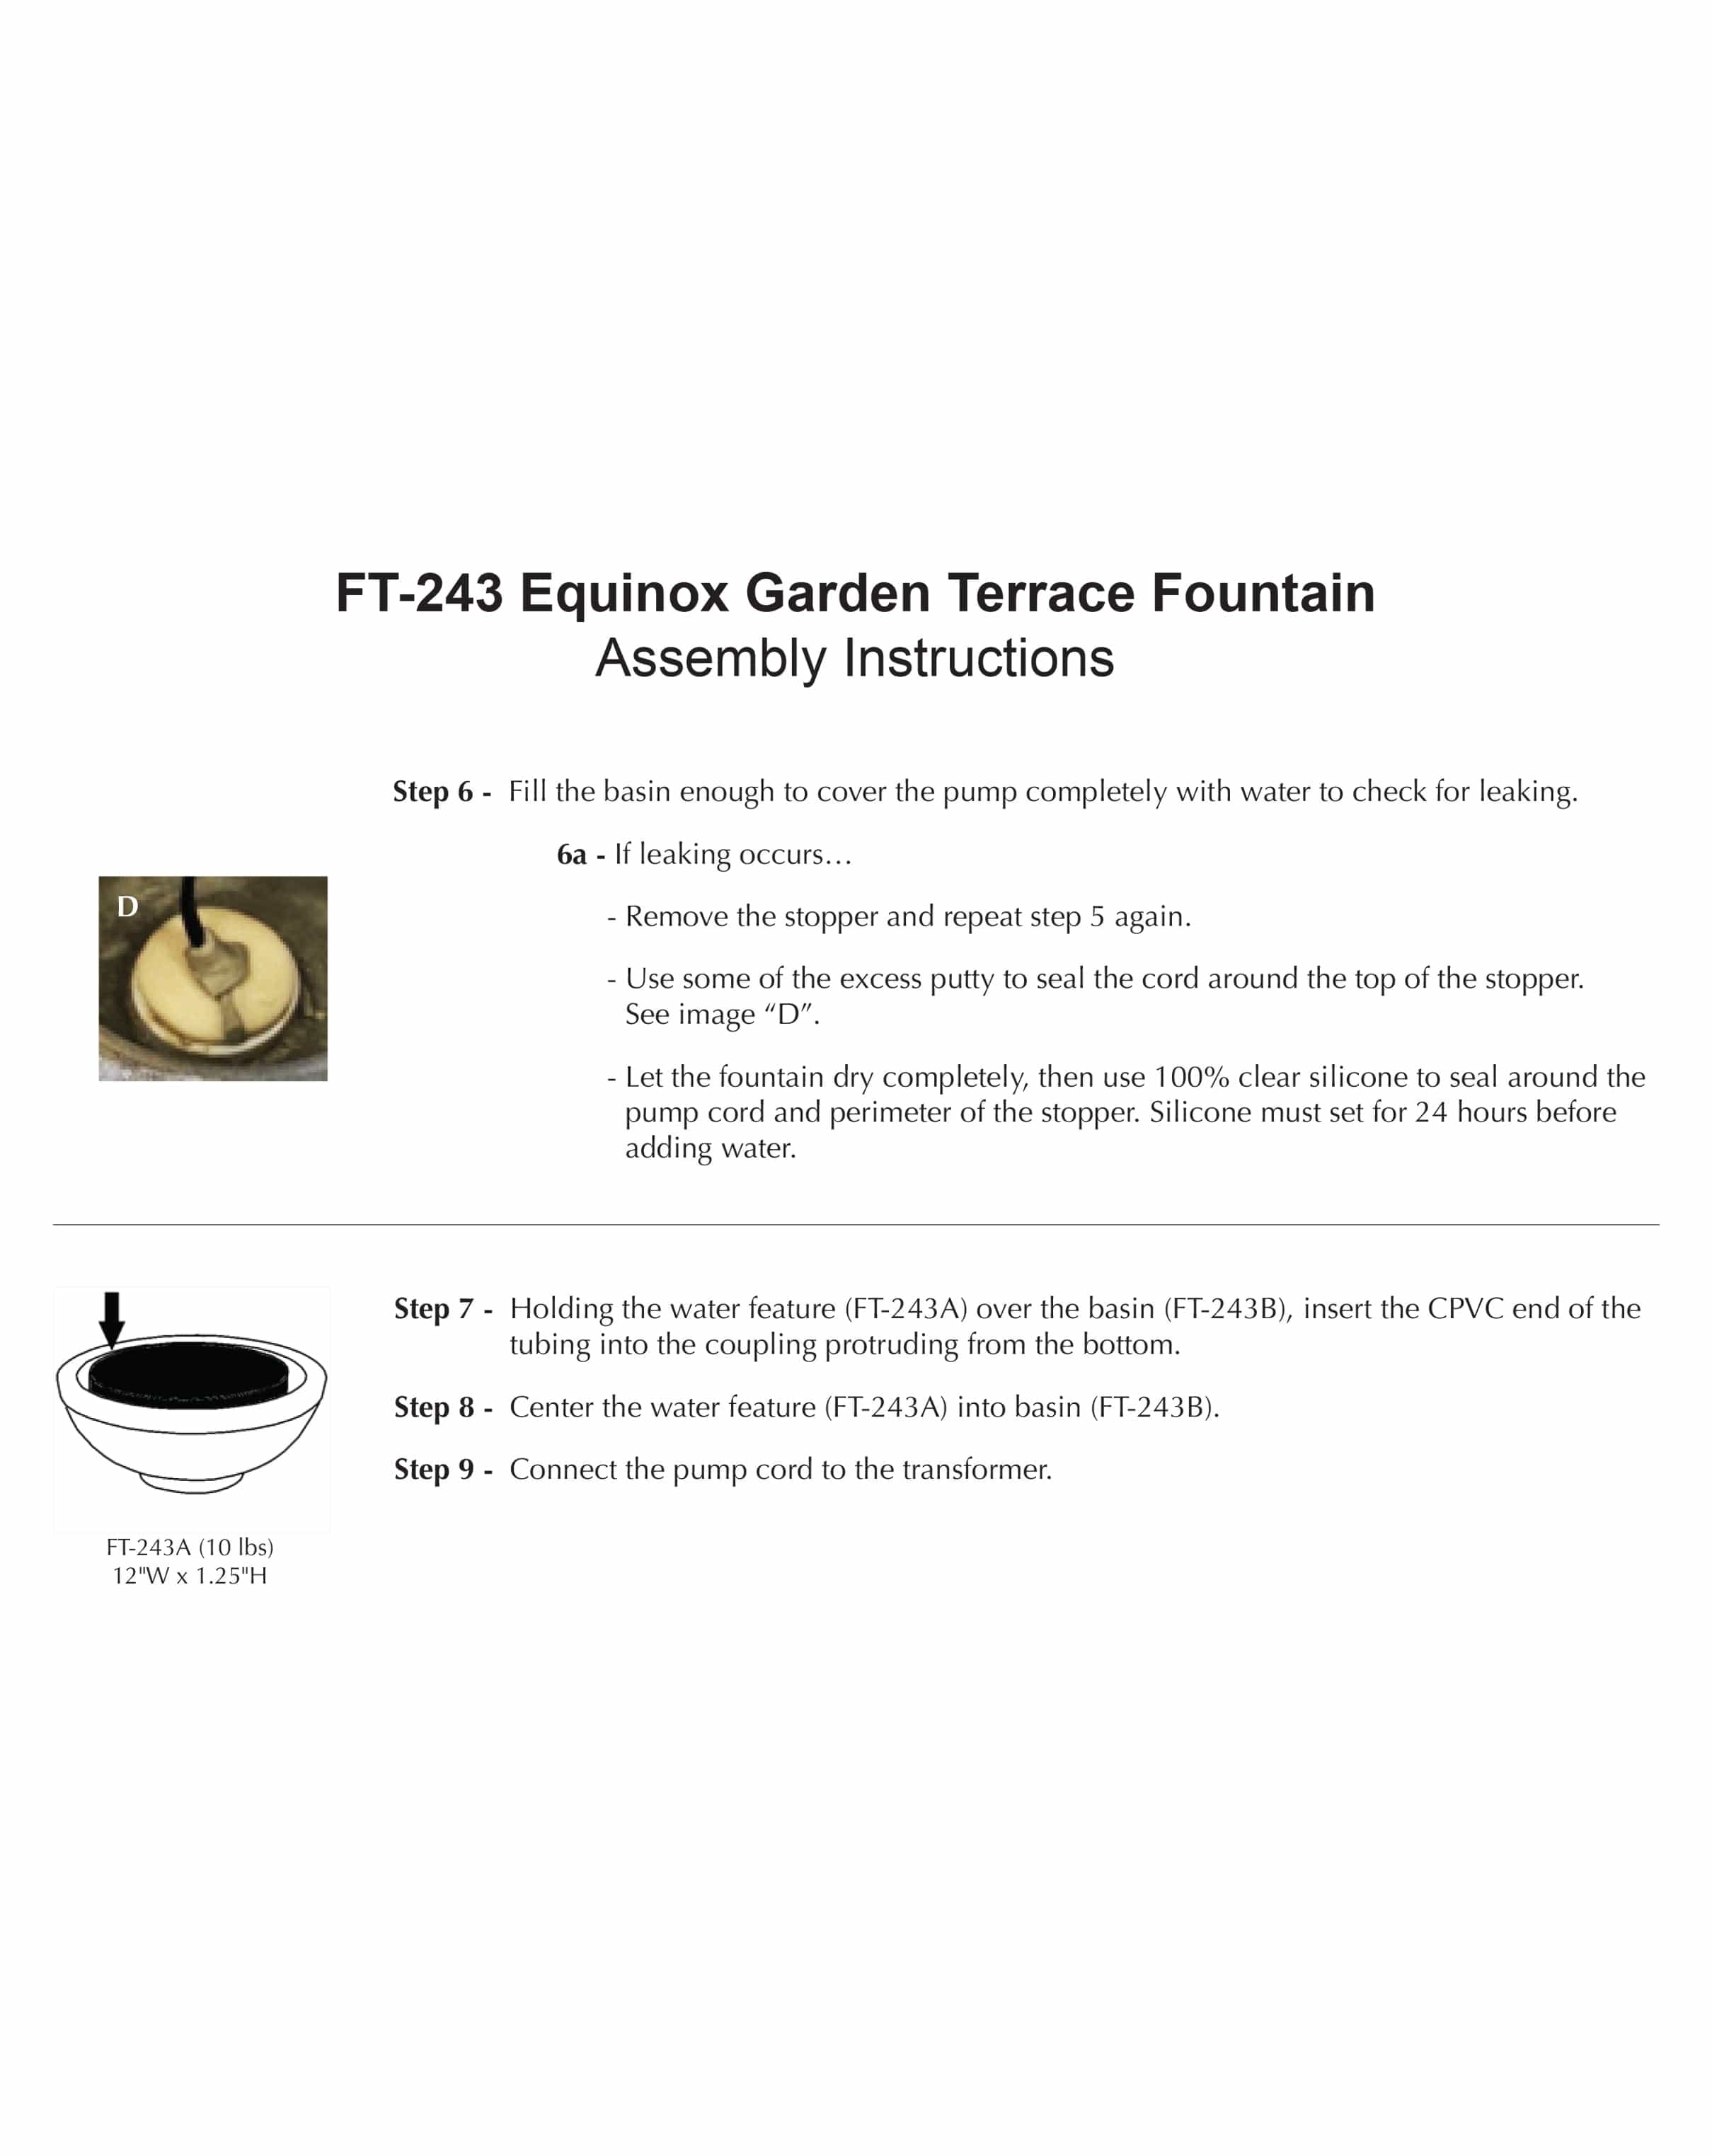 Equinox Garden Terrace Fountain - Outdoor Art Pros